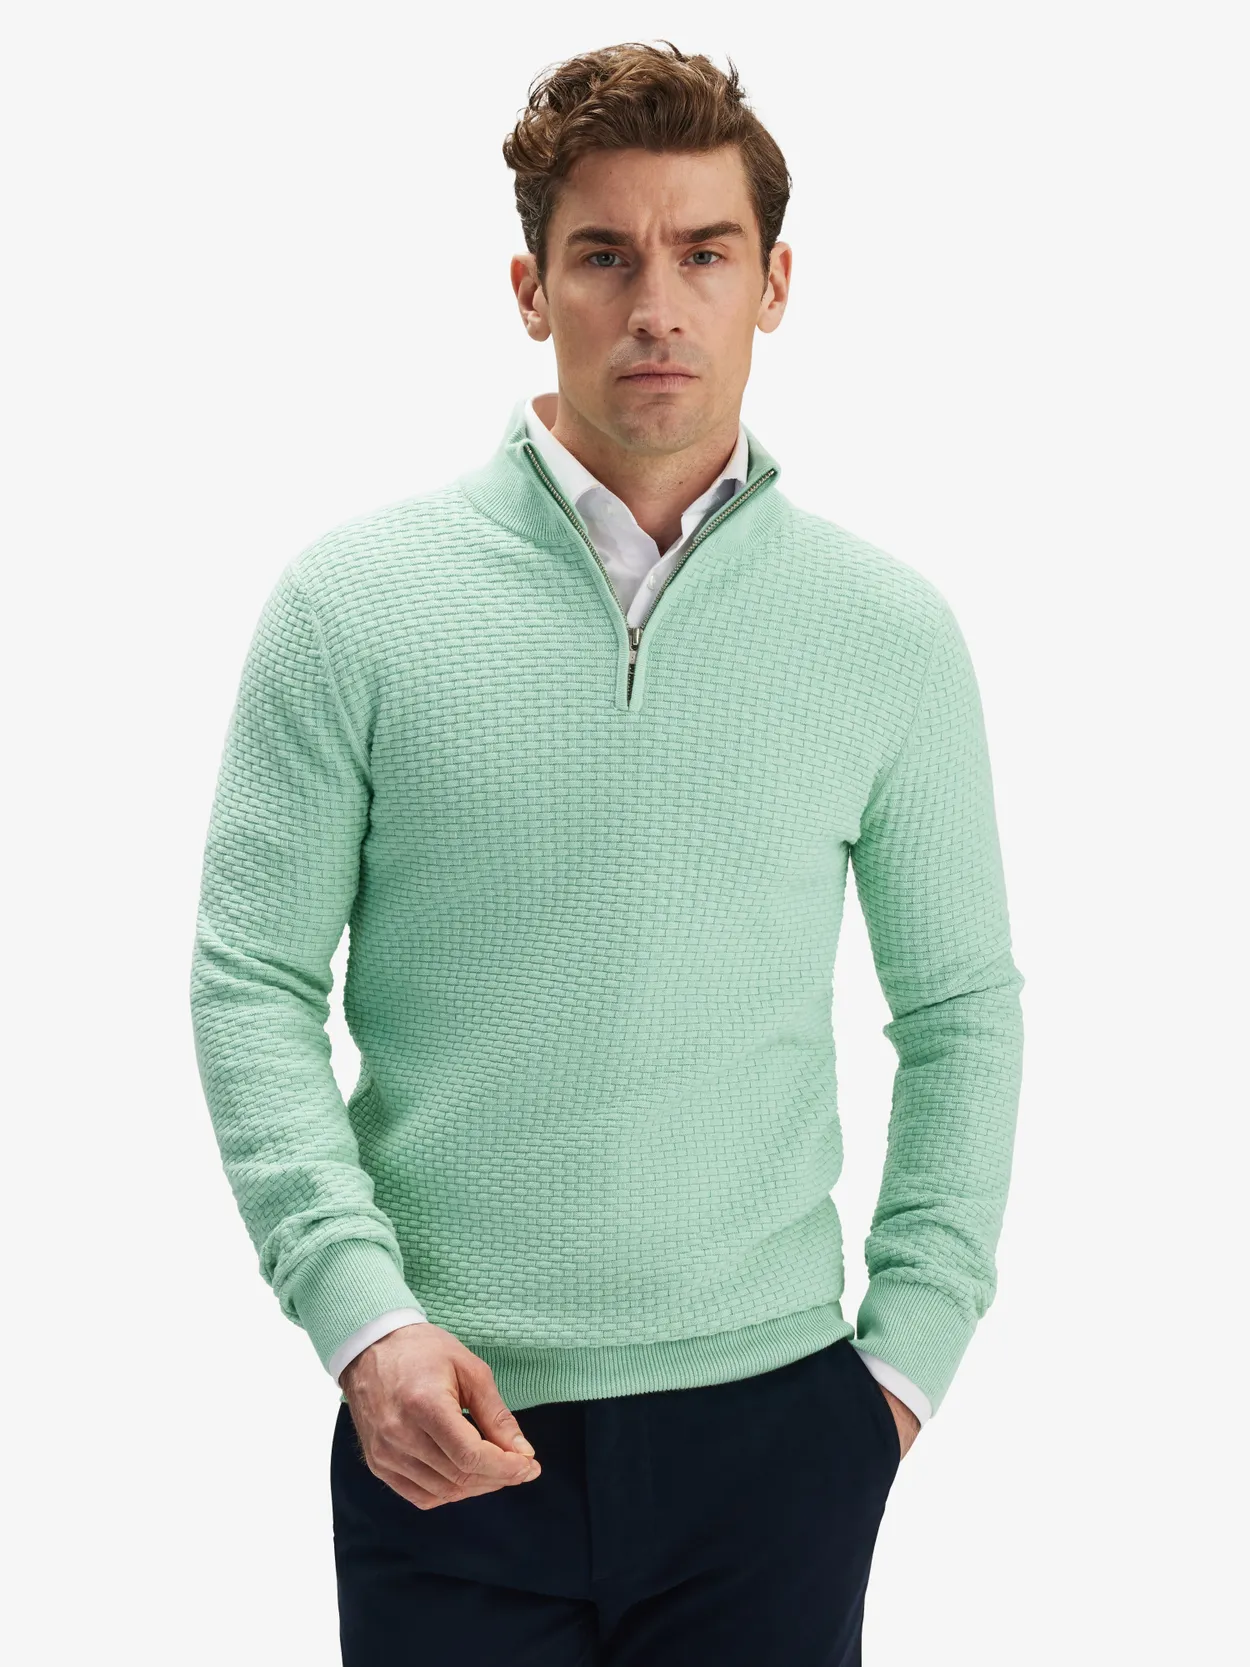 Mint Green Zipper Sweater